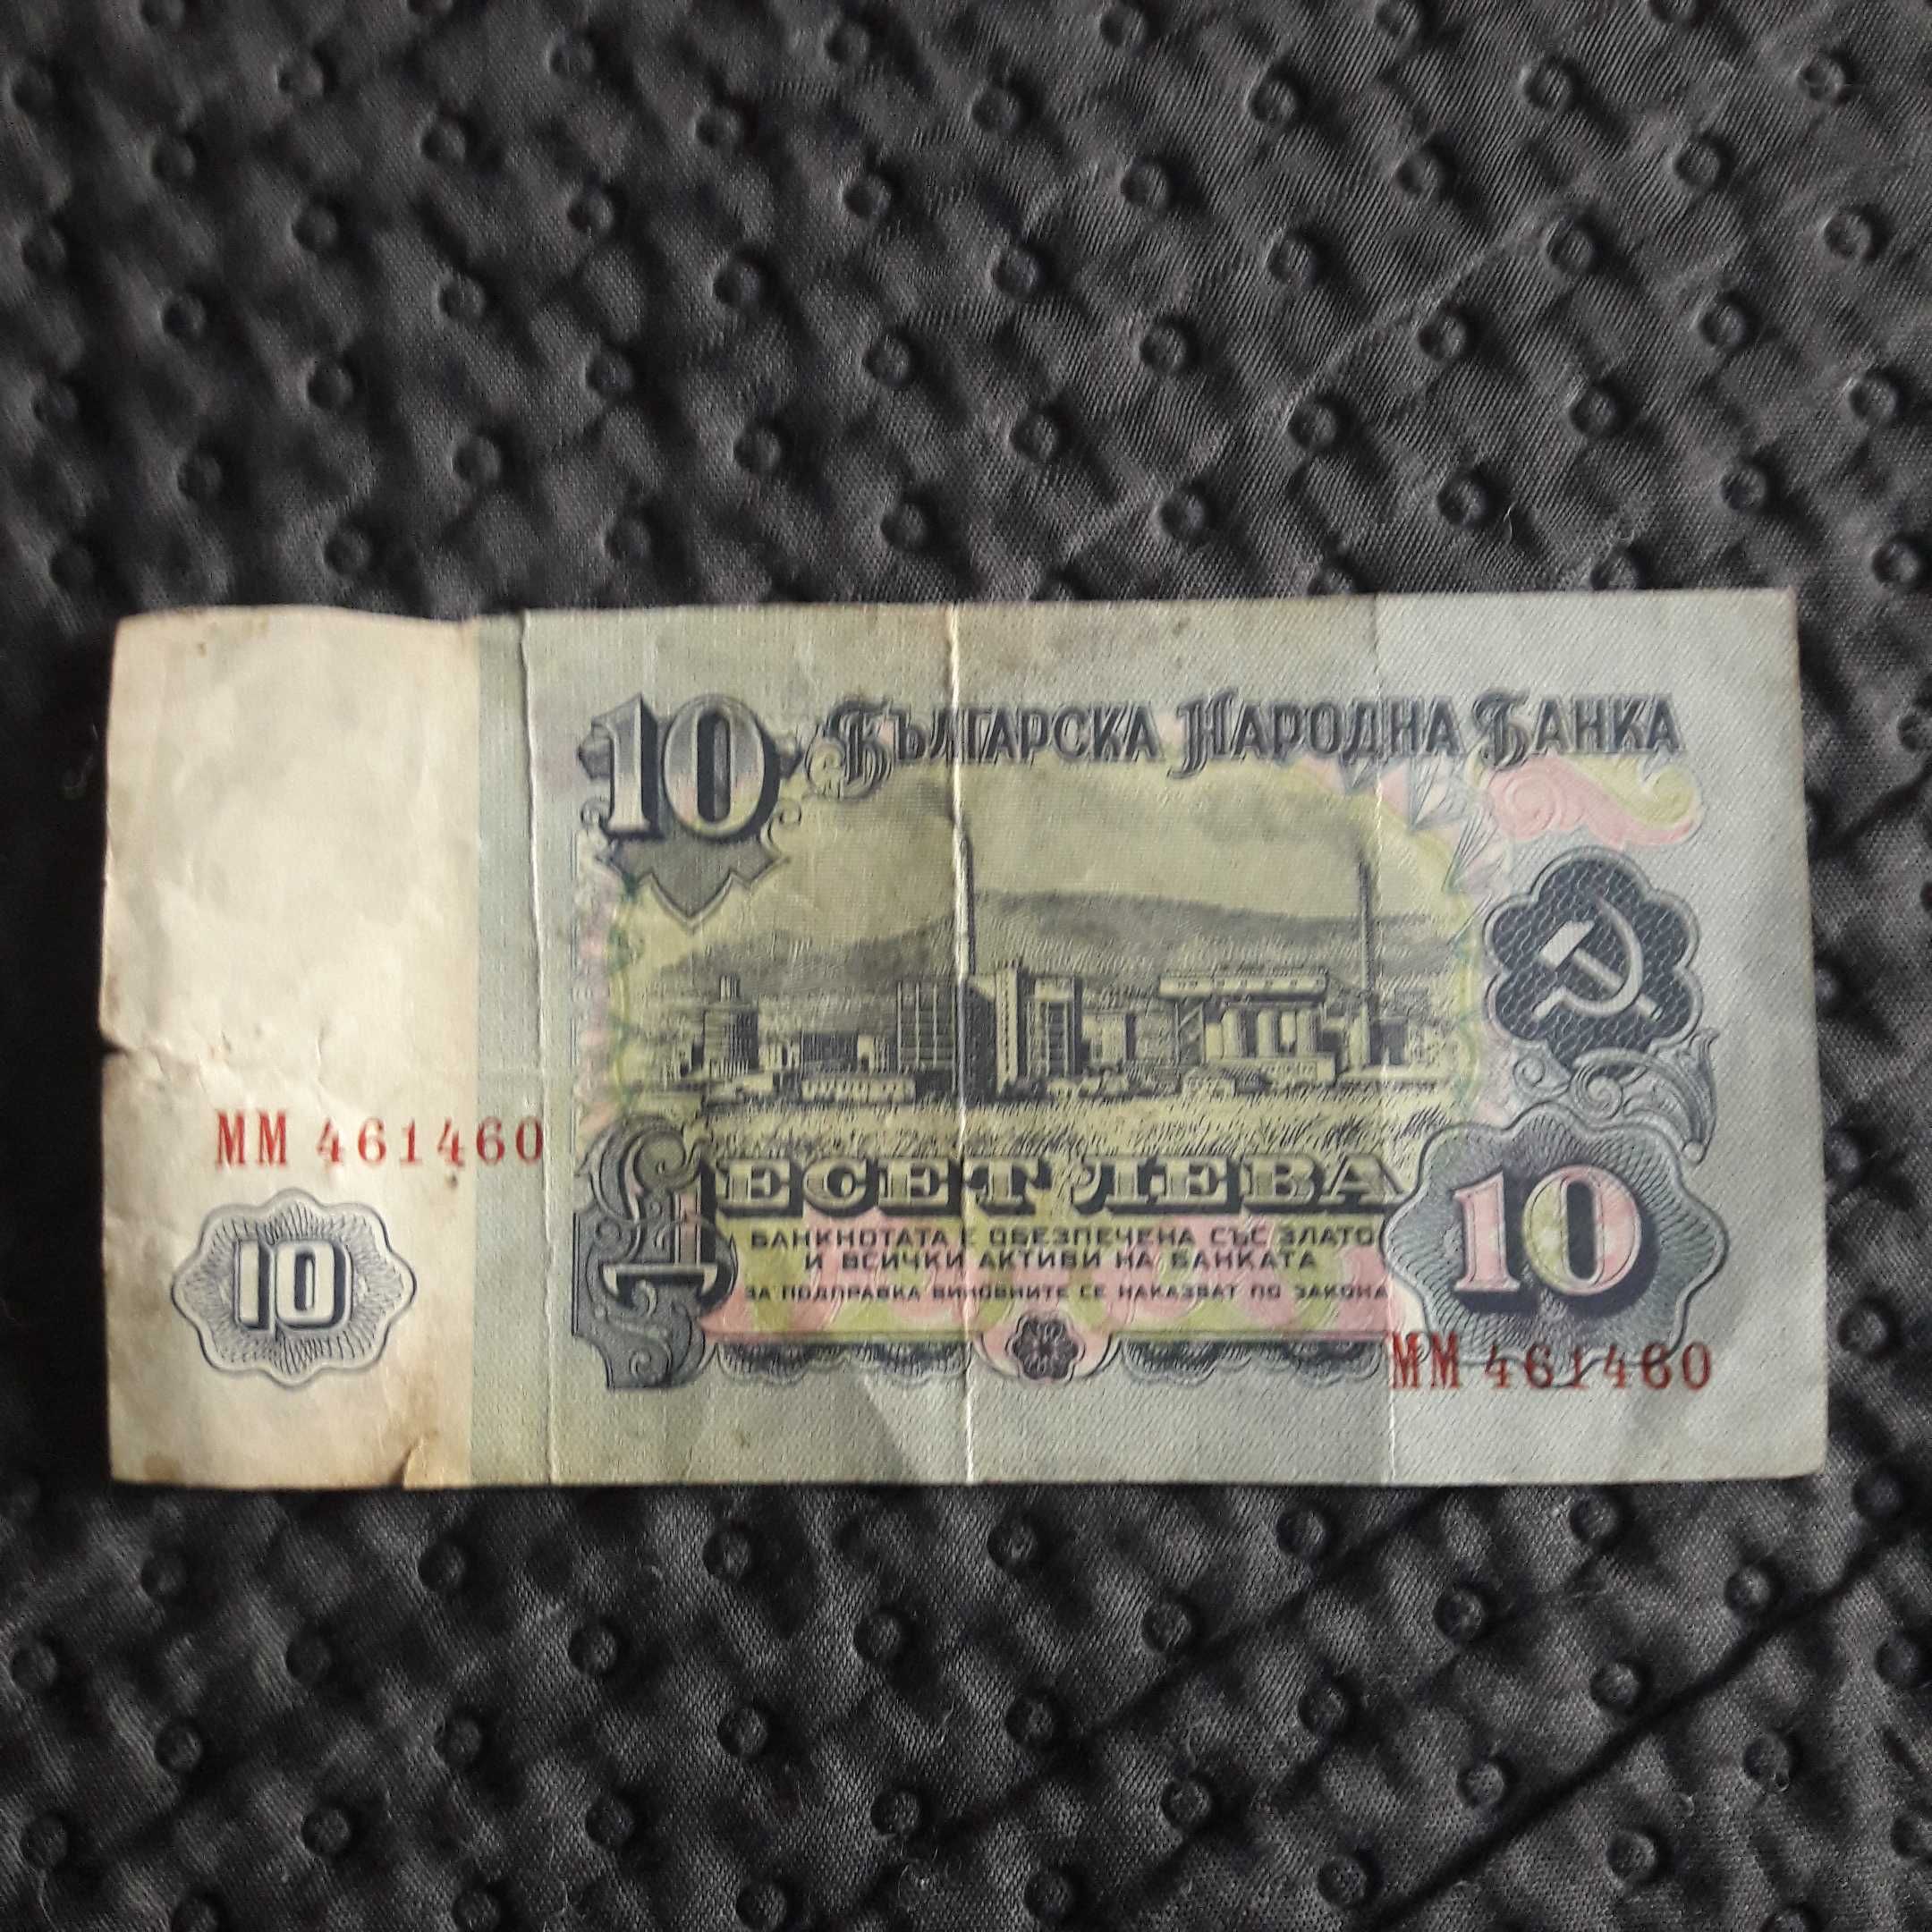 Banknot 10 Lewów z roku 1974